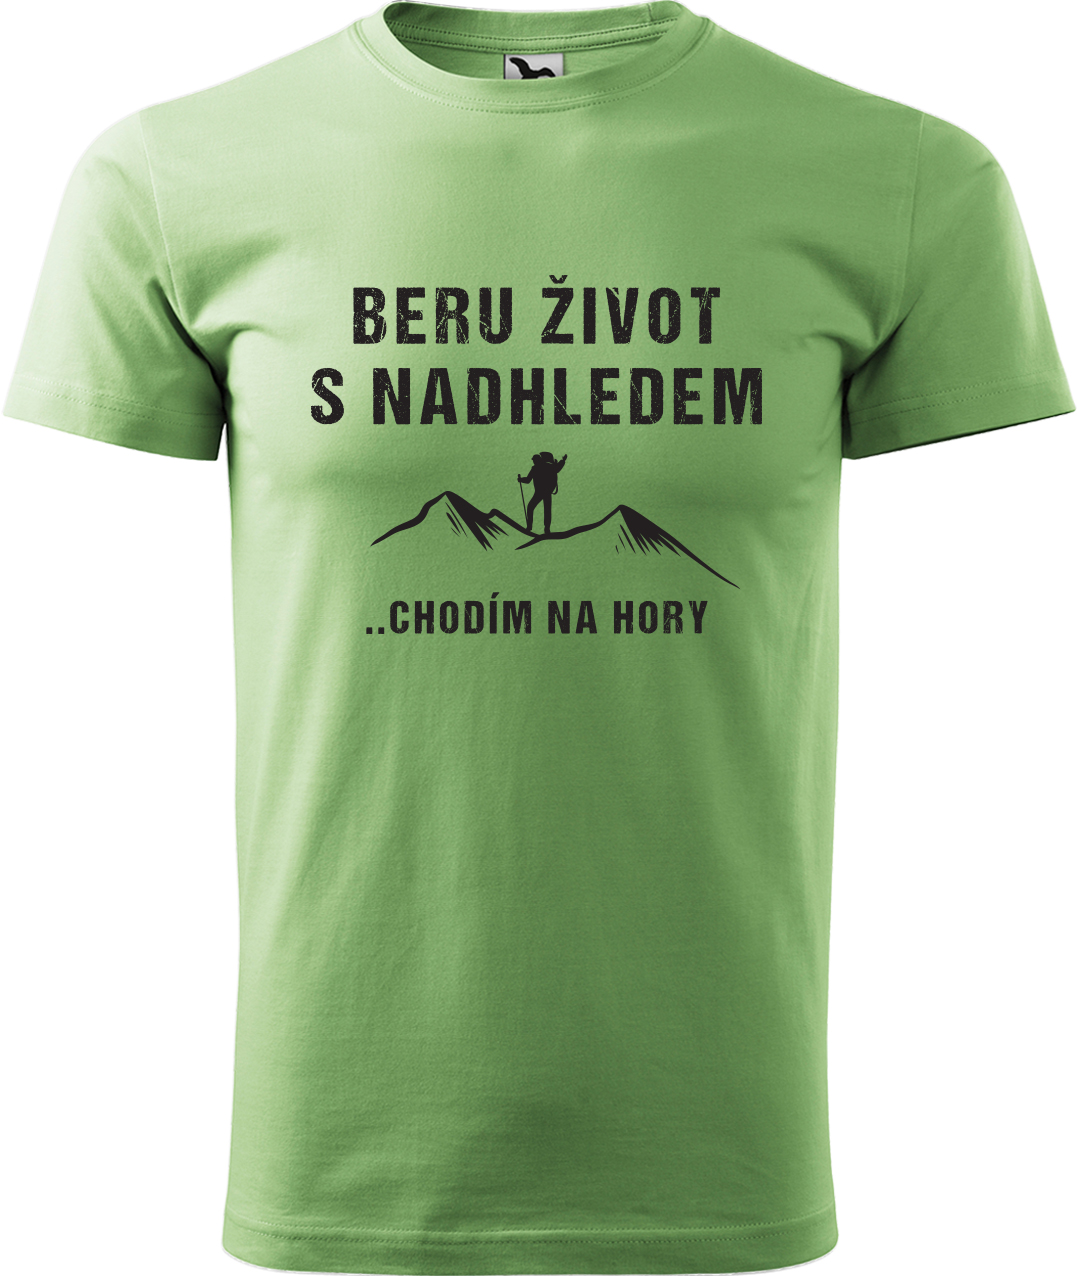 Pánské tričko na hory - Beru život s nadhledem, chodím na hory Velikost: XL, Barva: Trávově zelená (39), Střih: pánský